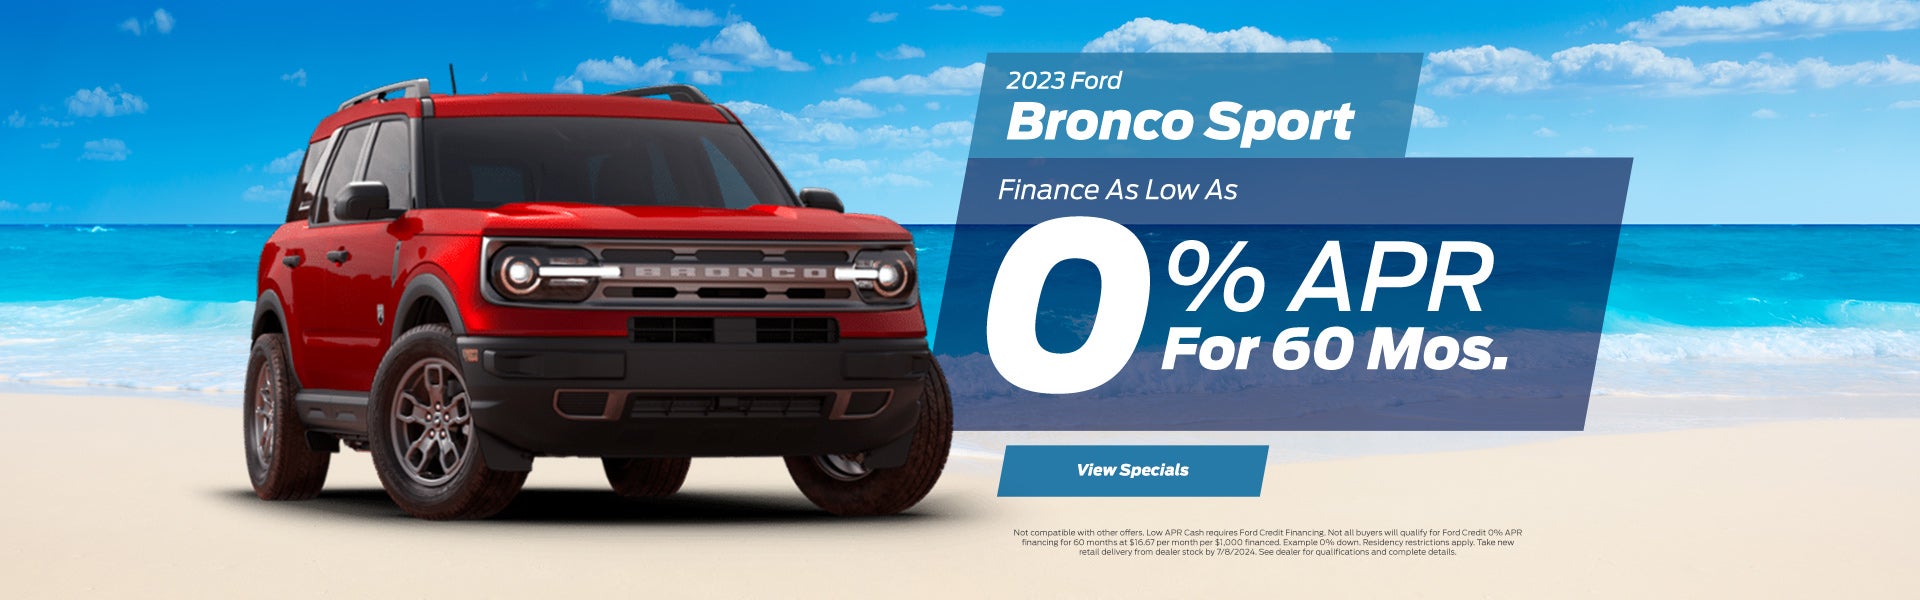 Bronco Sport Special